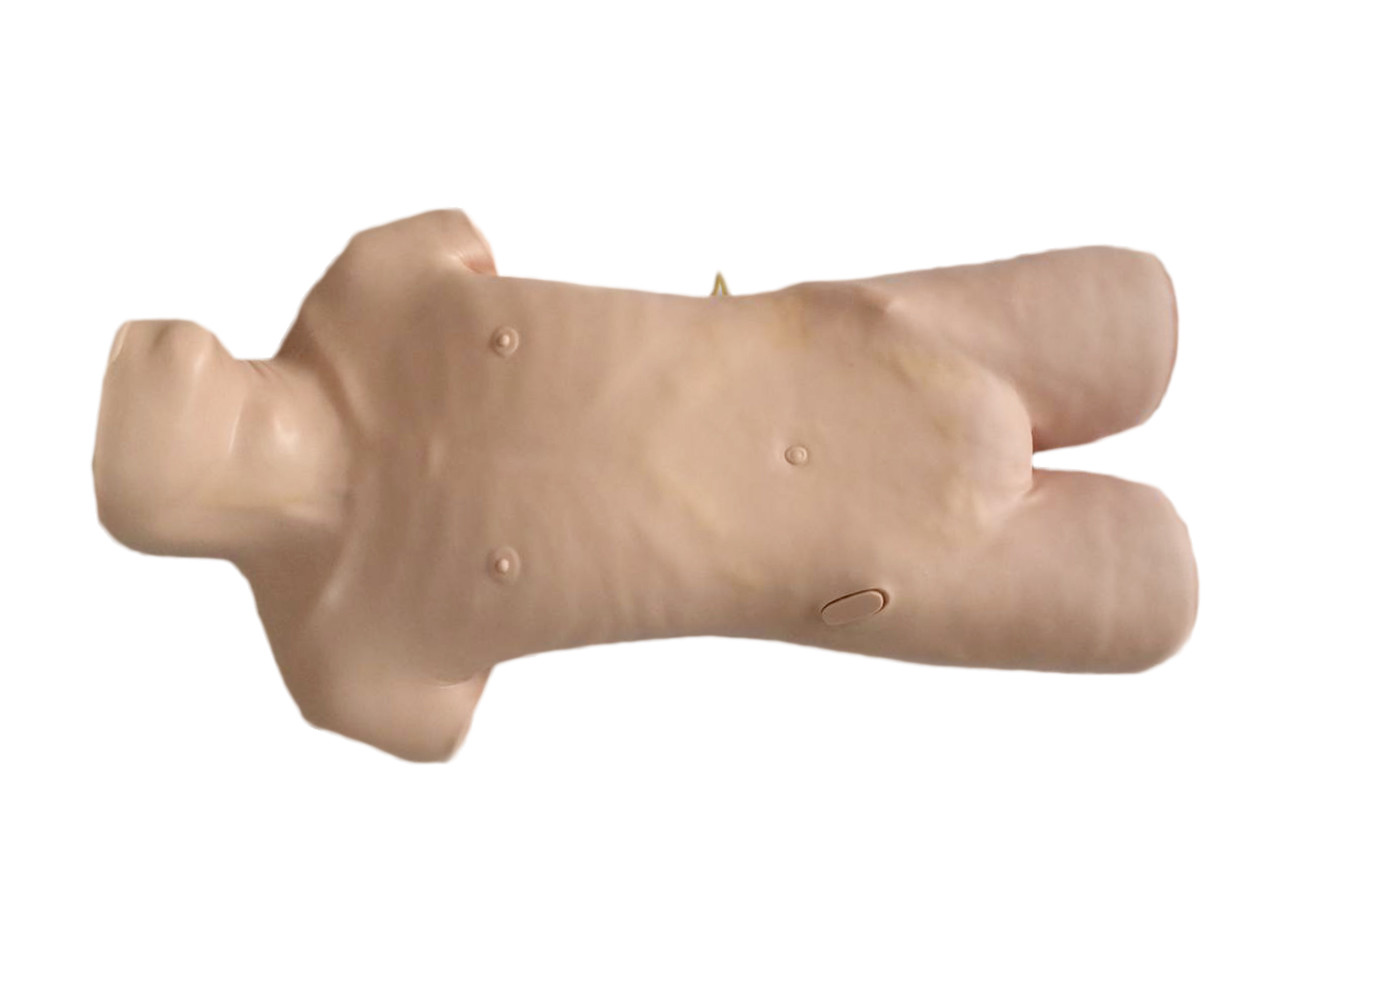 Realistische hogere abdominocentesismannequin van de lichaams klinische simulatie voor punctuurpraktijk